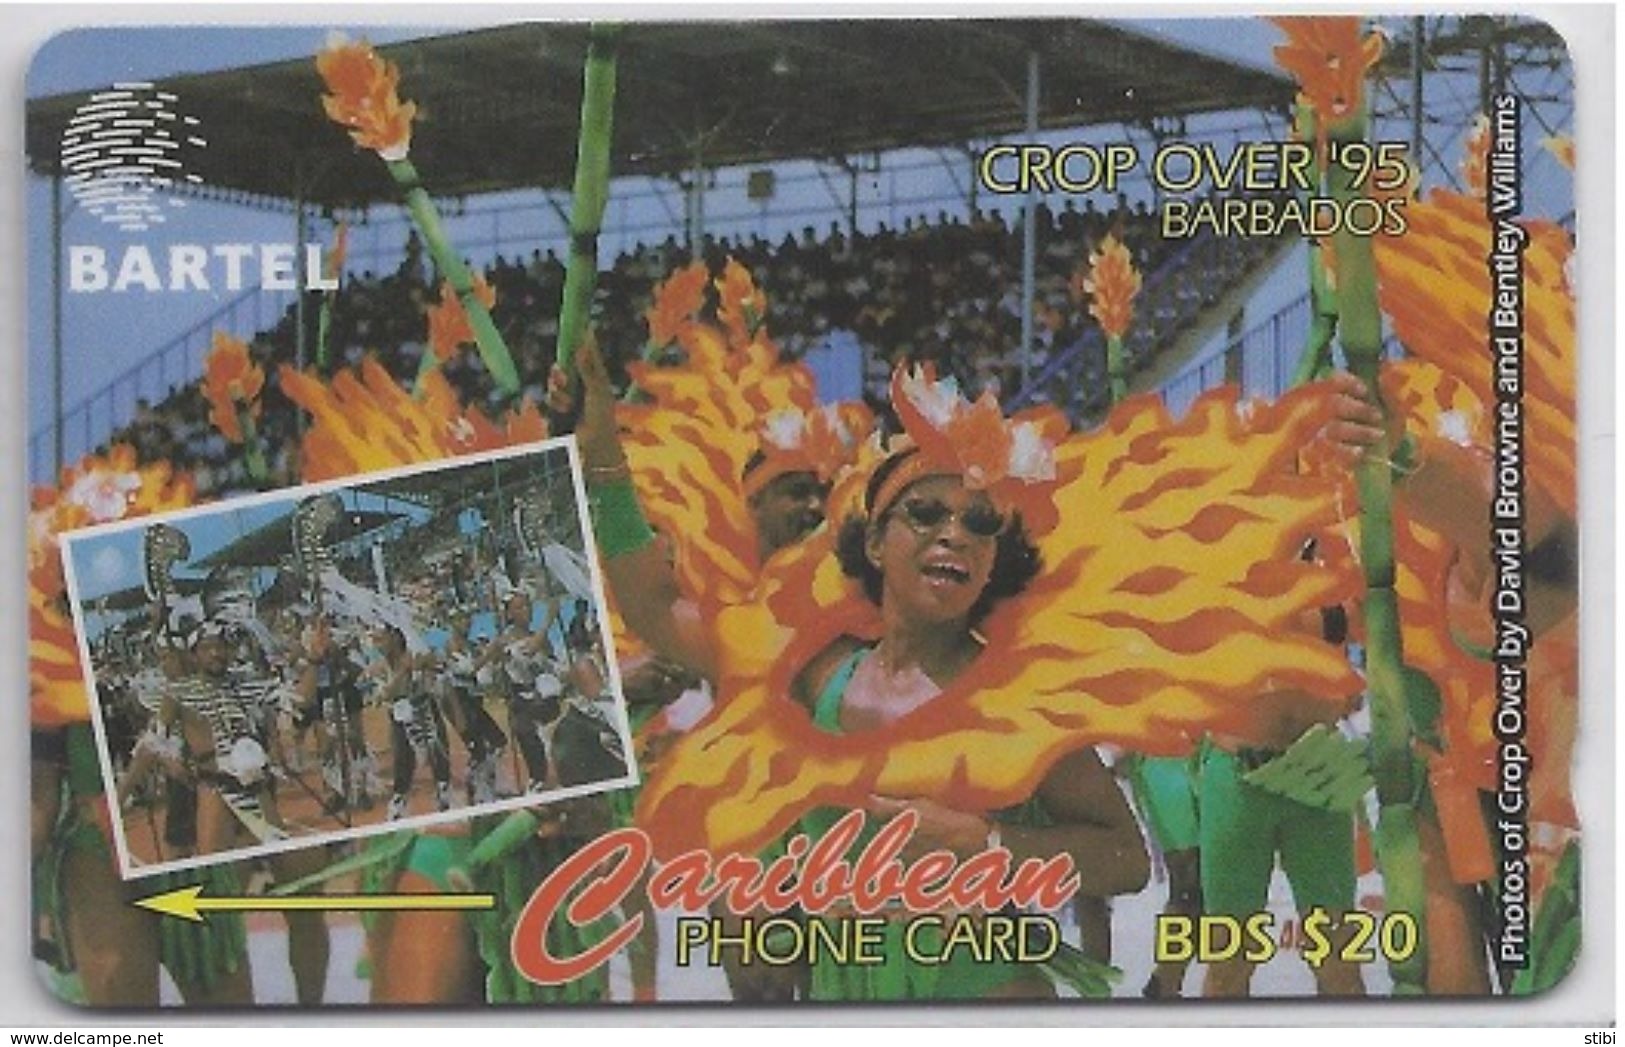 BARBADOS - CROP OVER '95 - 16CBDA - Barbades